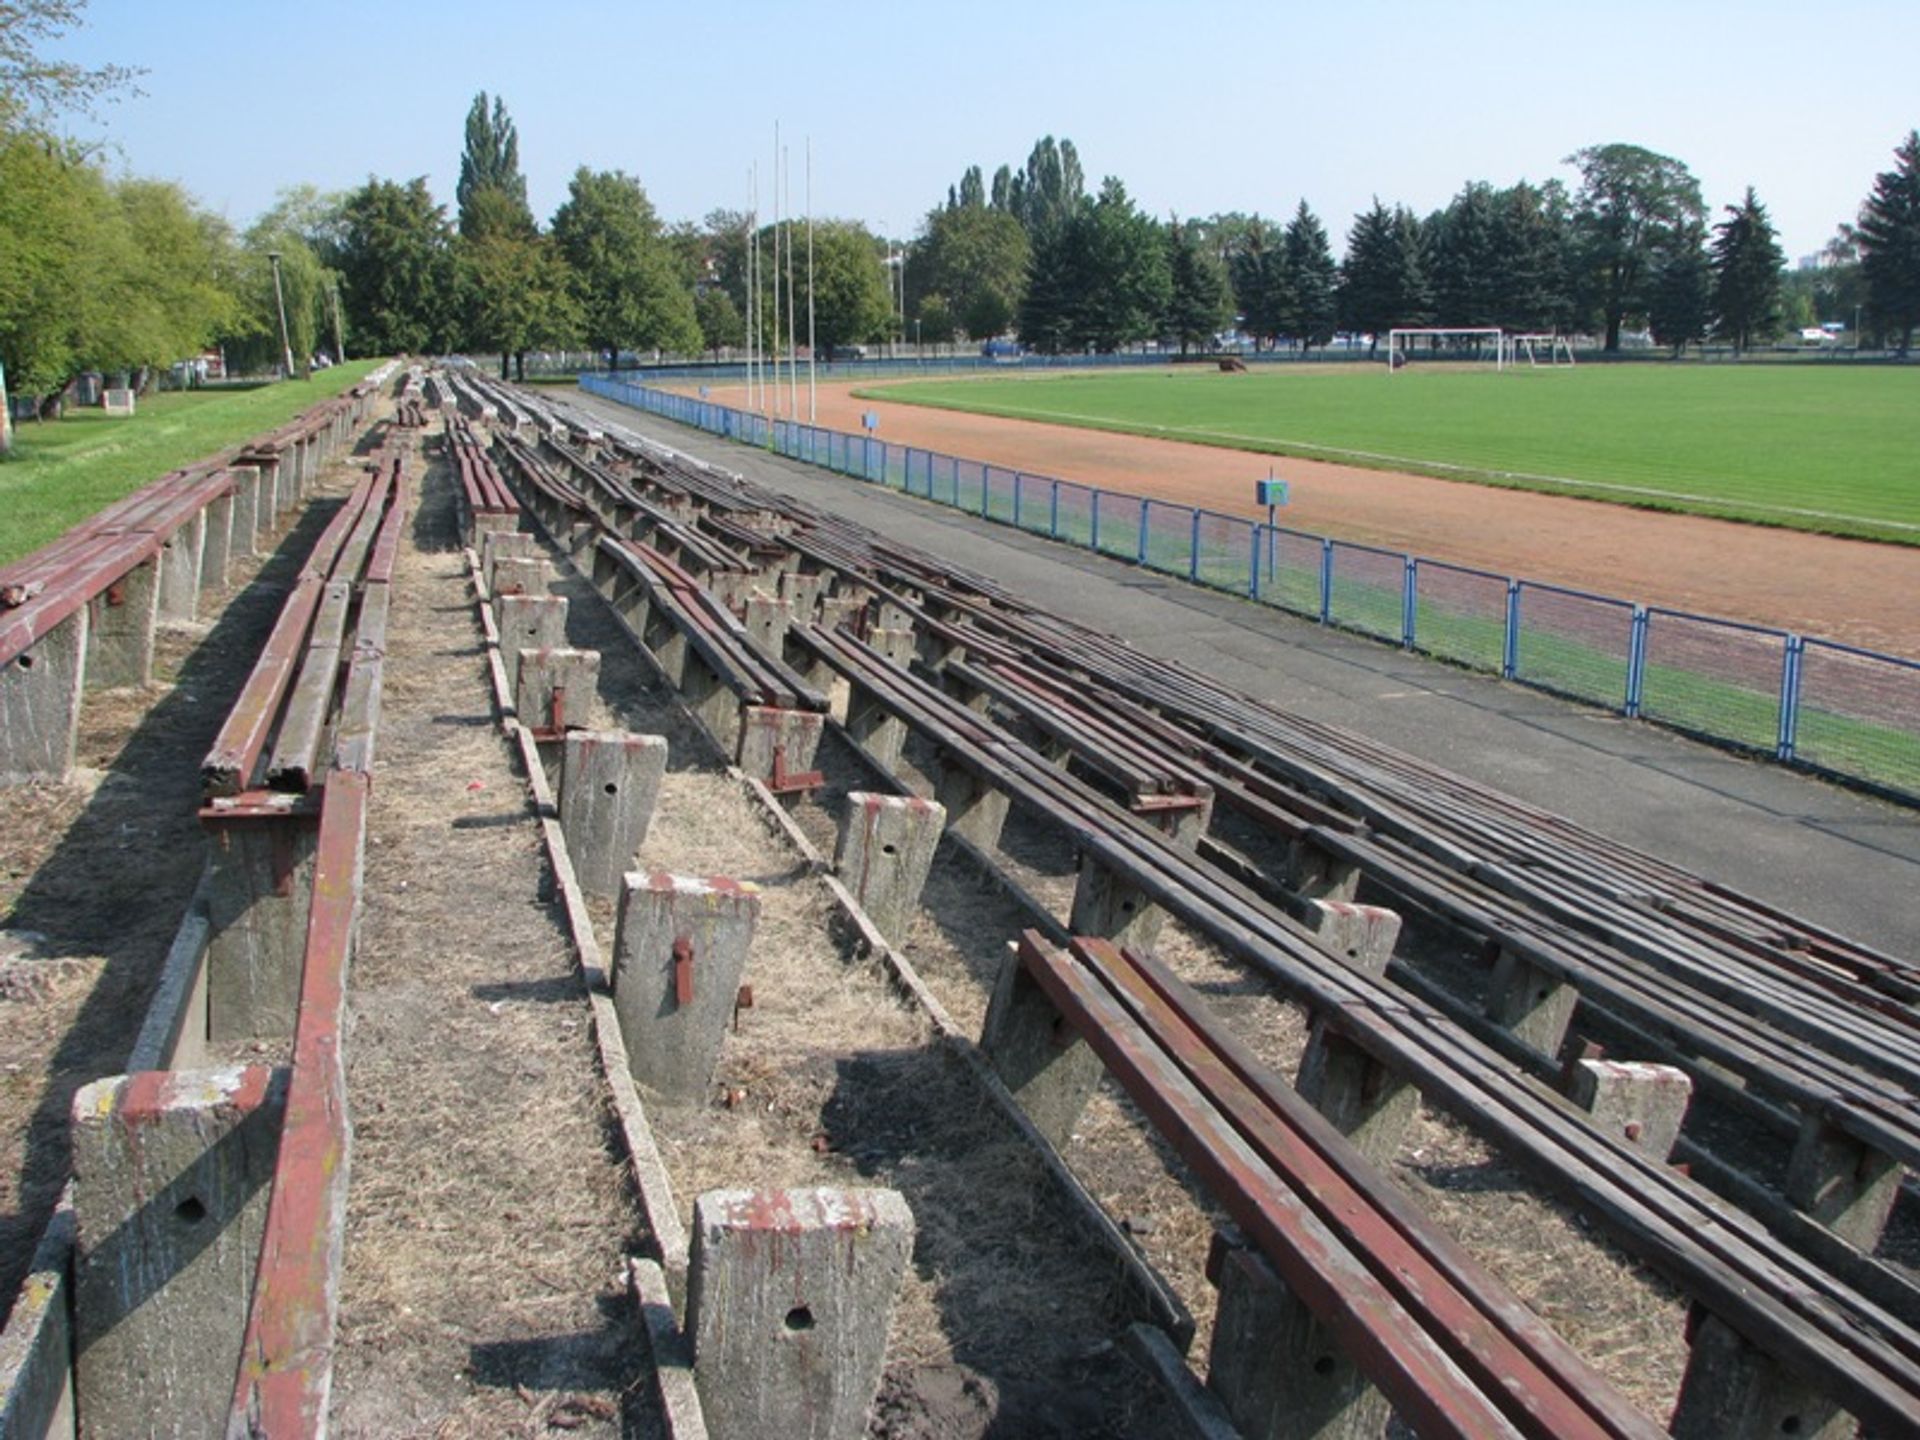  Małe stadiony we Wrocławiu popadają w ruinę